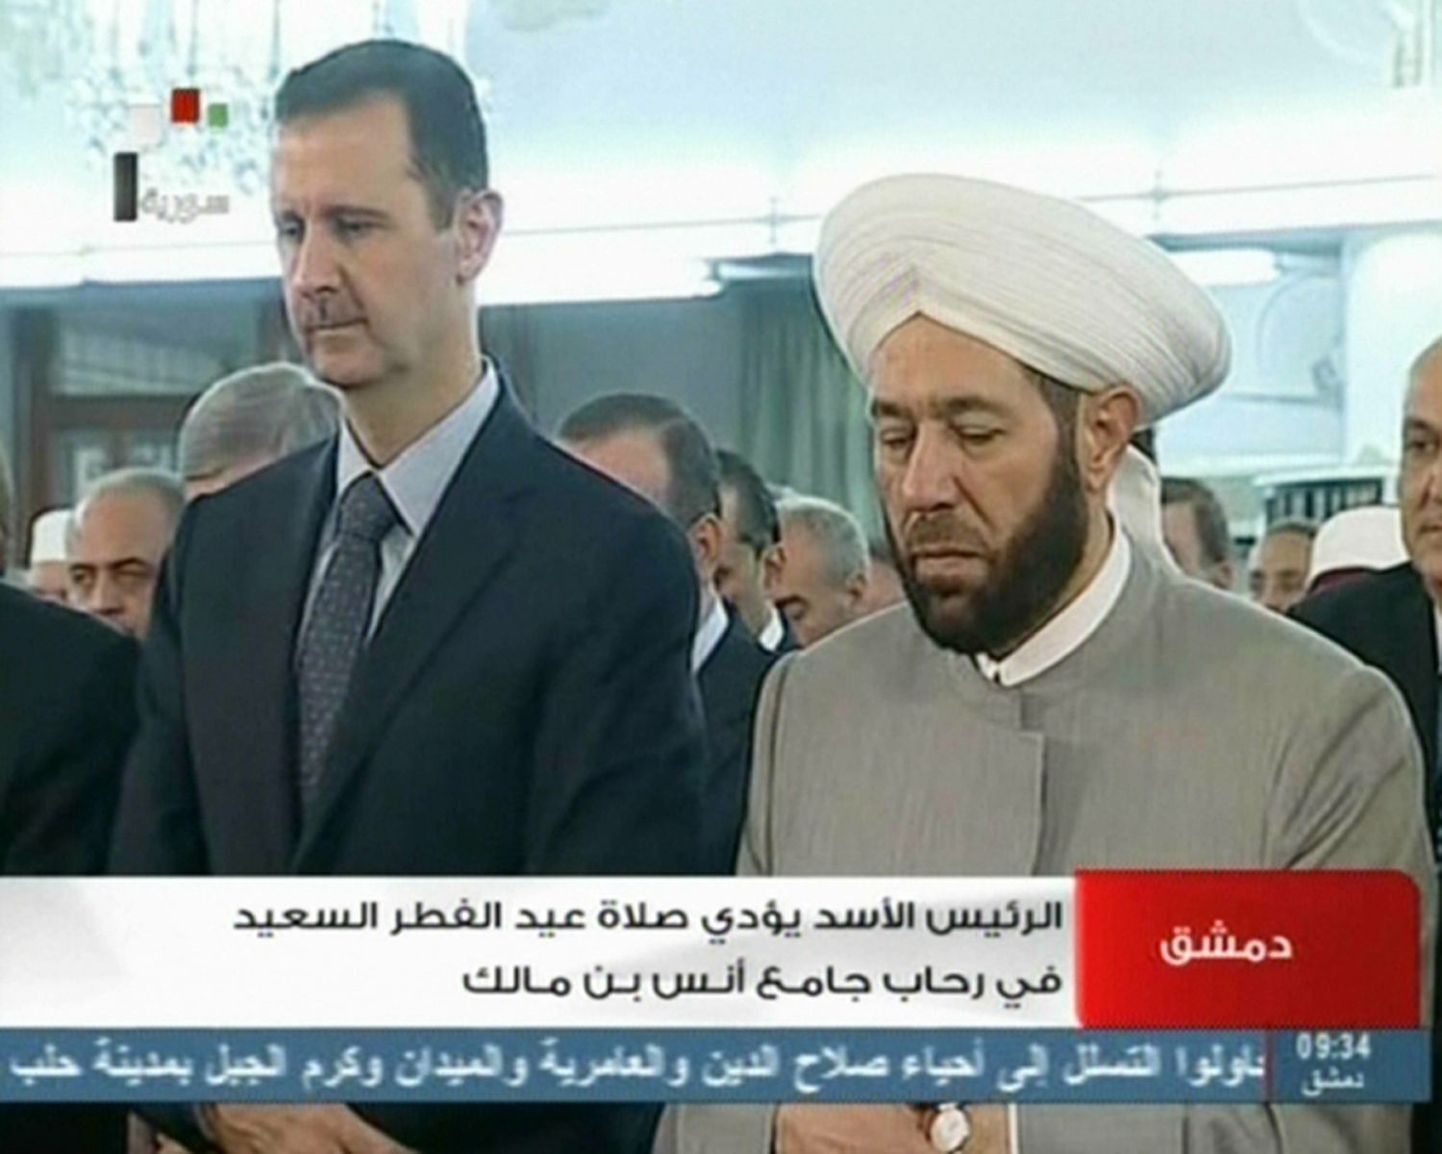 Süüria riigitelevisioon näitas täna kaadreid sellest, kuidas president Bashar al-Assad (vasakul) hommikusel palvusel osales.